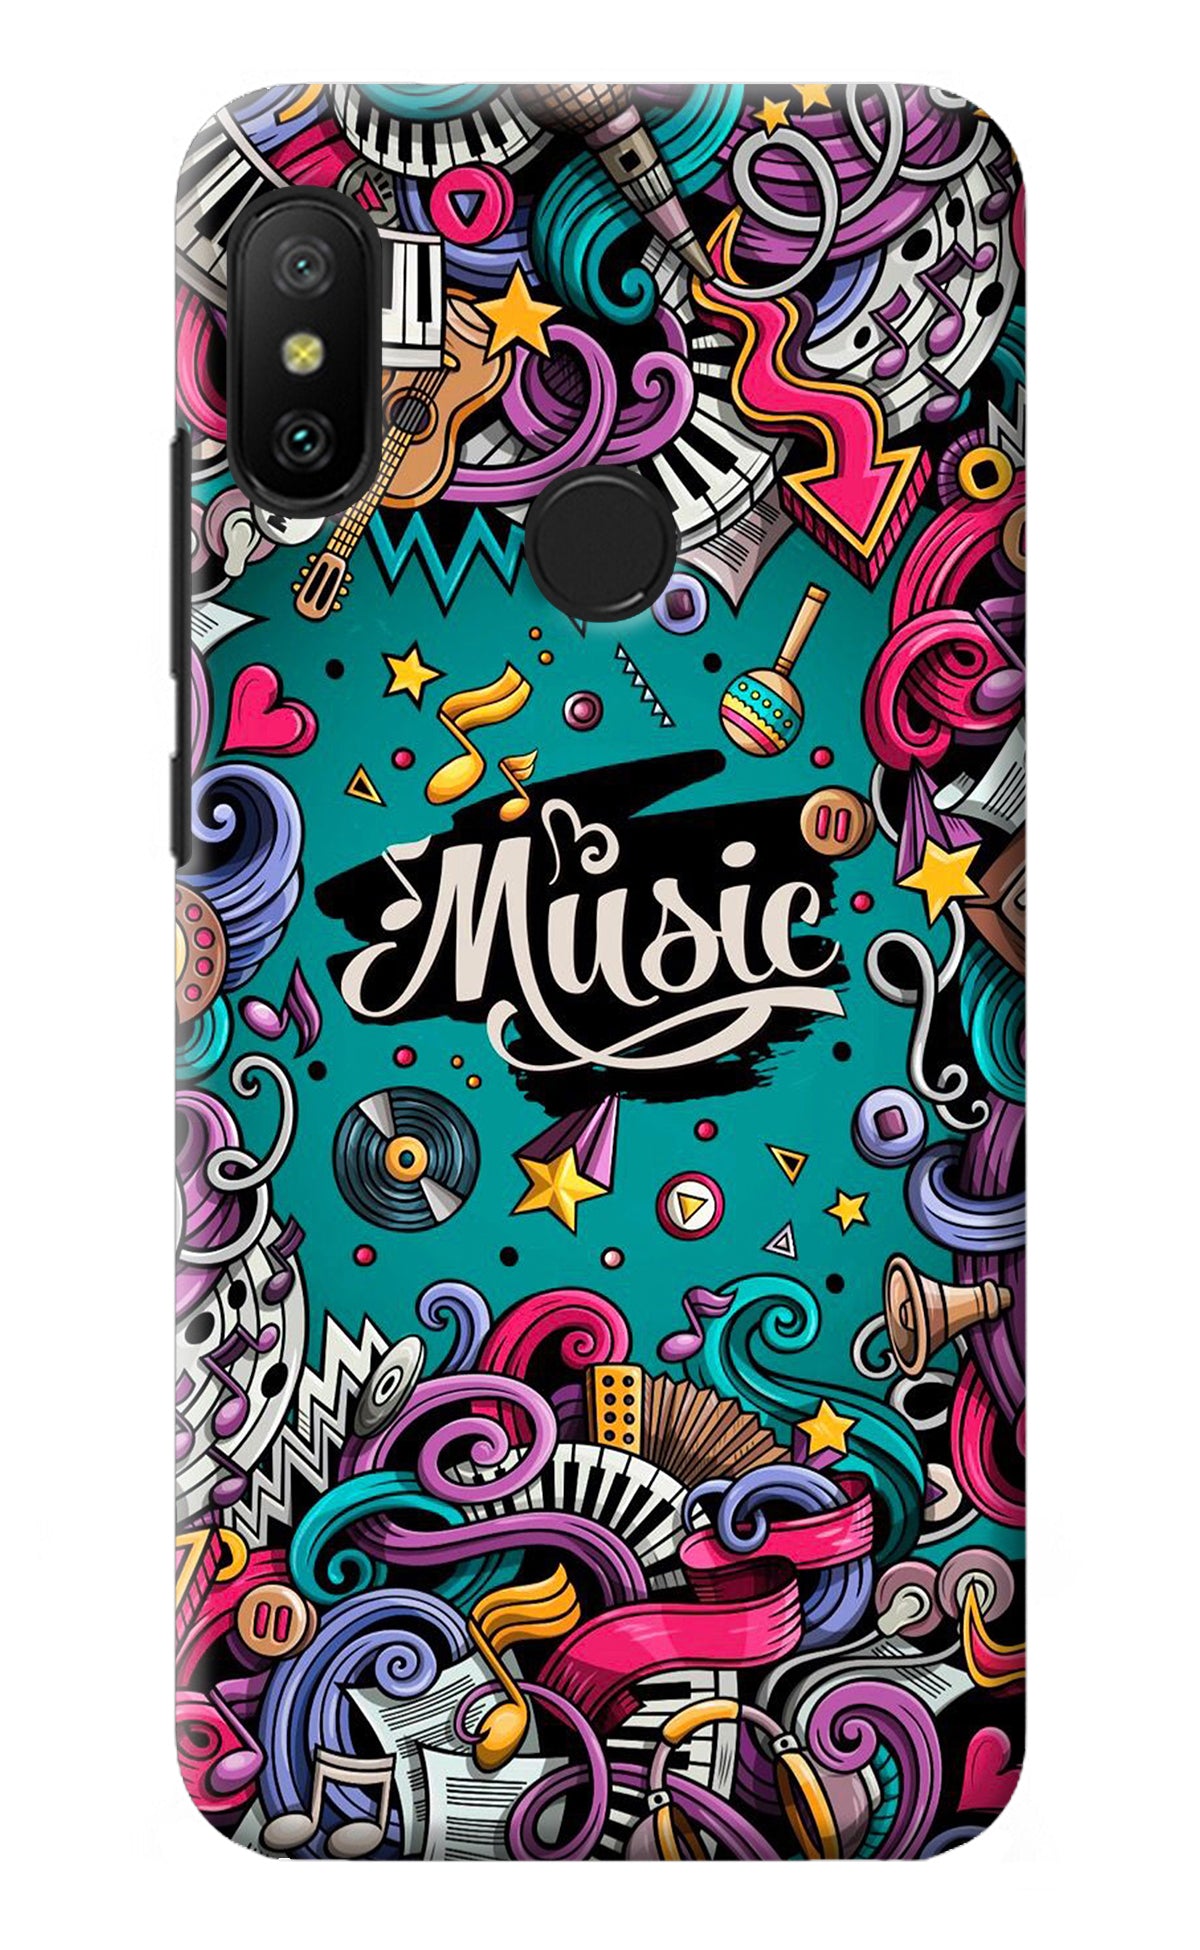 Music Graffiti Redmi 6 Pro Back Cover